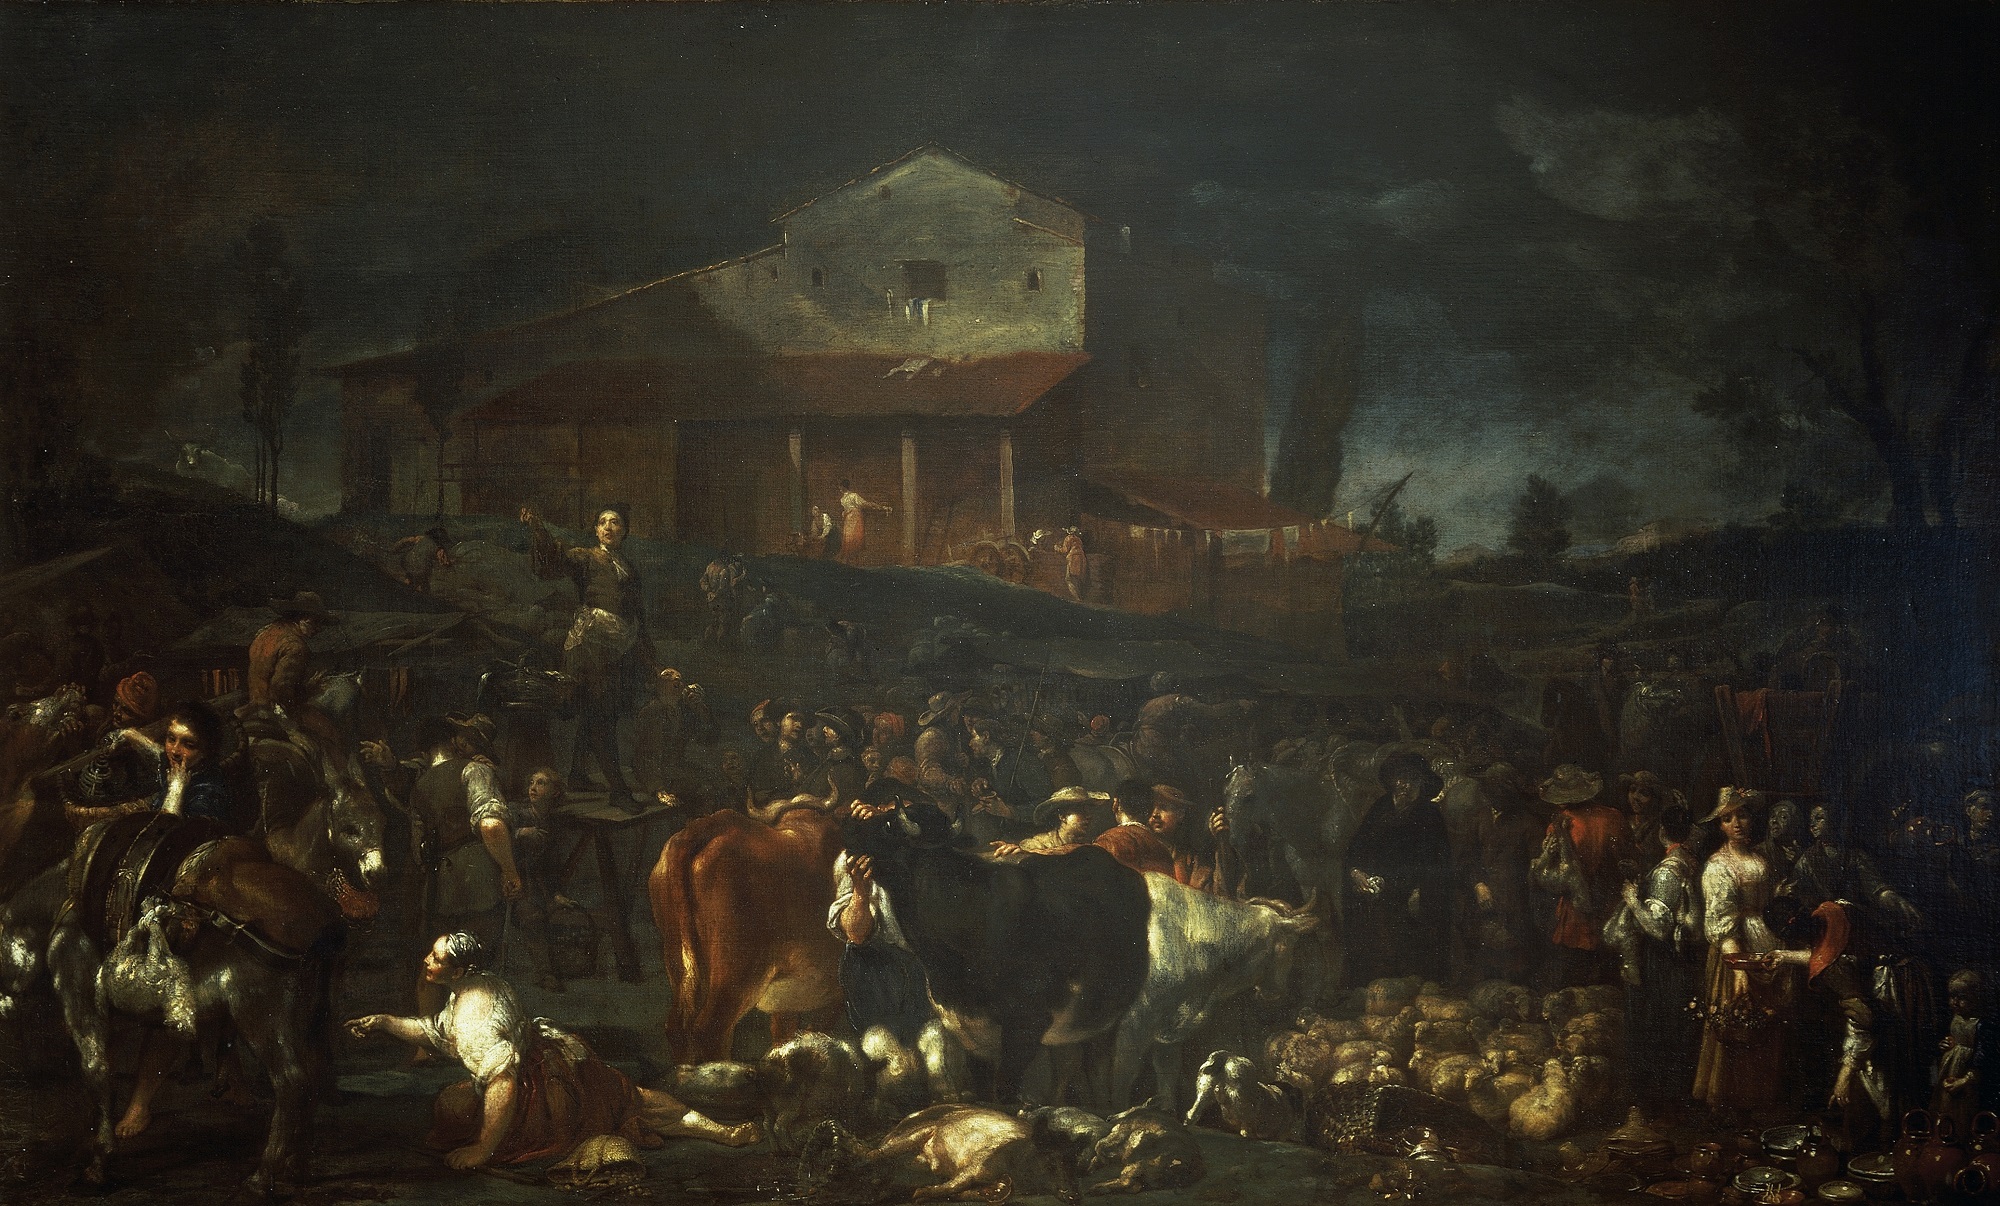 Giuseppe Maria Crespi, La fiera di Poggio a Caiano, 1709, olio su tela, 116,7x196,3cm., Gallerie degli Uffizi, Firenze